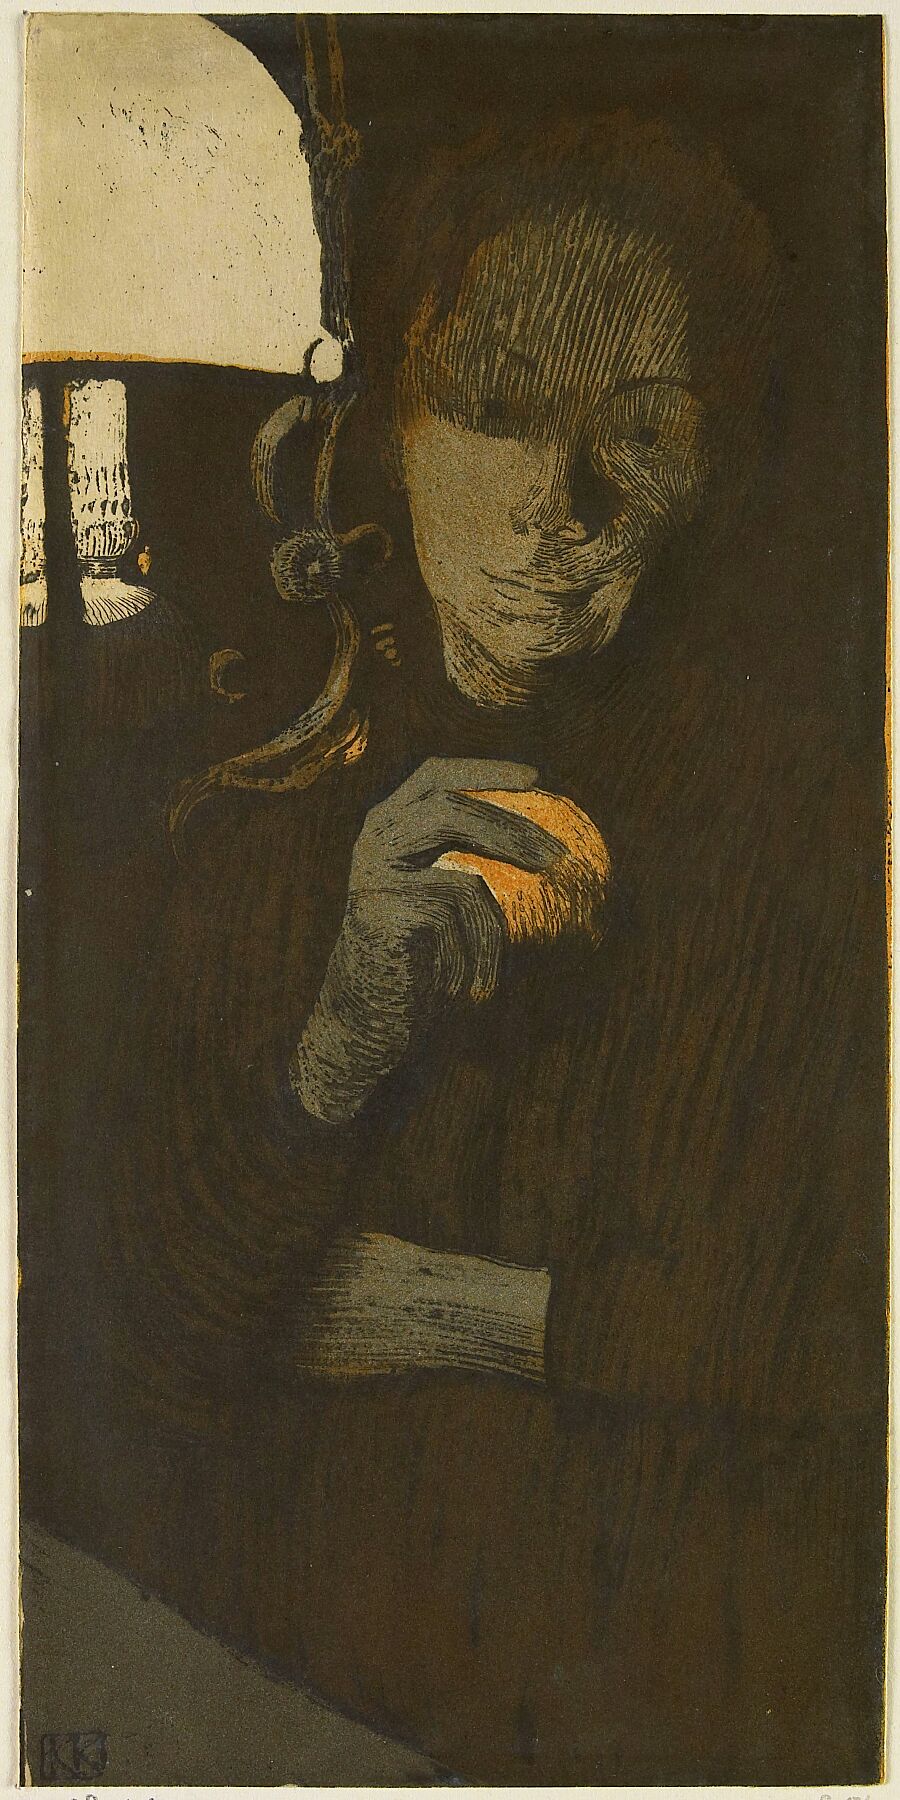 Portrait of an Unknown Woman with an Orange by a Lamp by Käthe Kollwitz - 1901